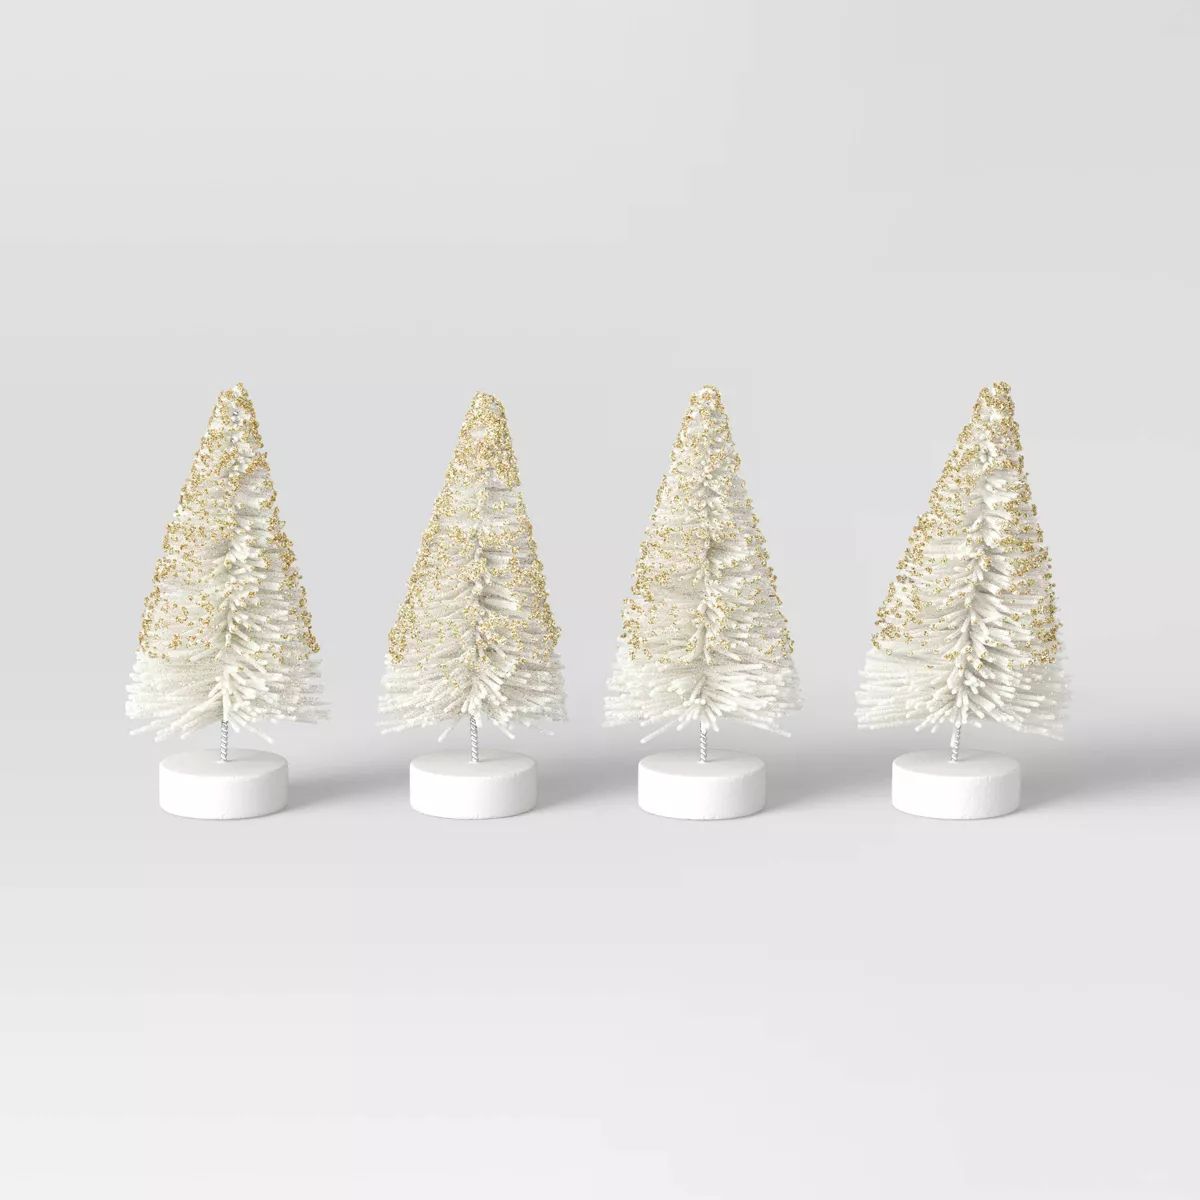 4pc 4" Glittered Sisal Christmas Bottle Brush Tree Set - Wondershop™ White | Target